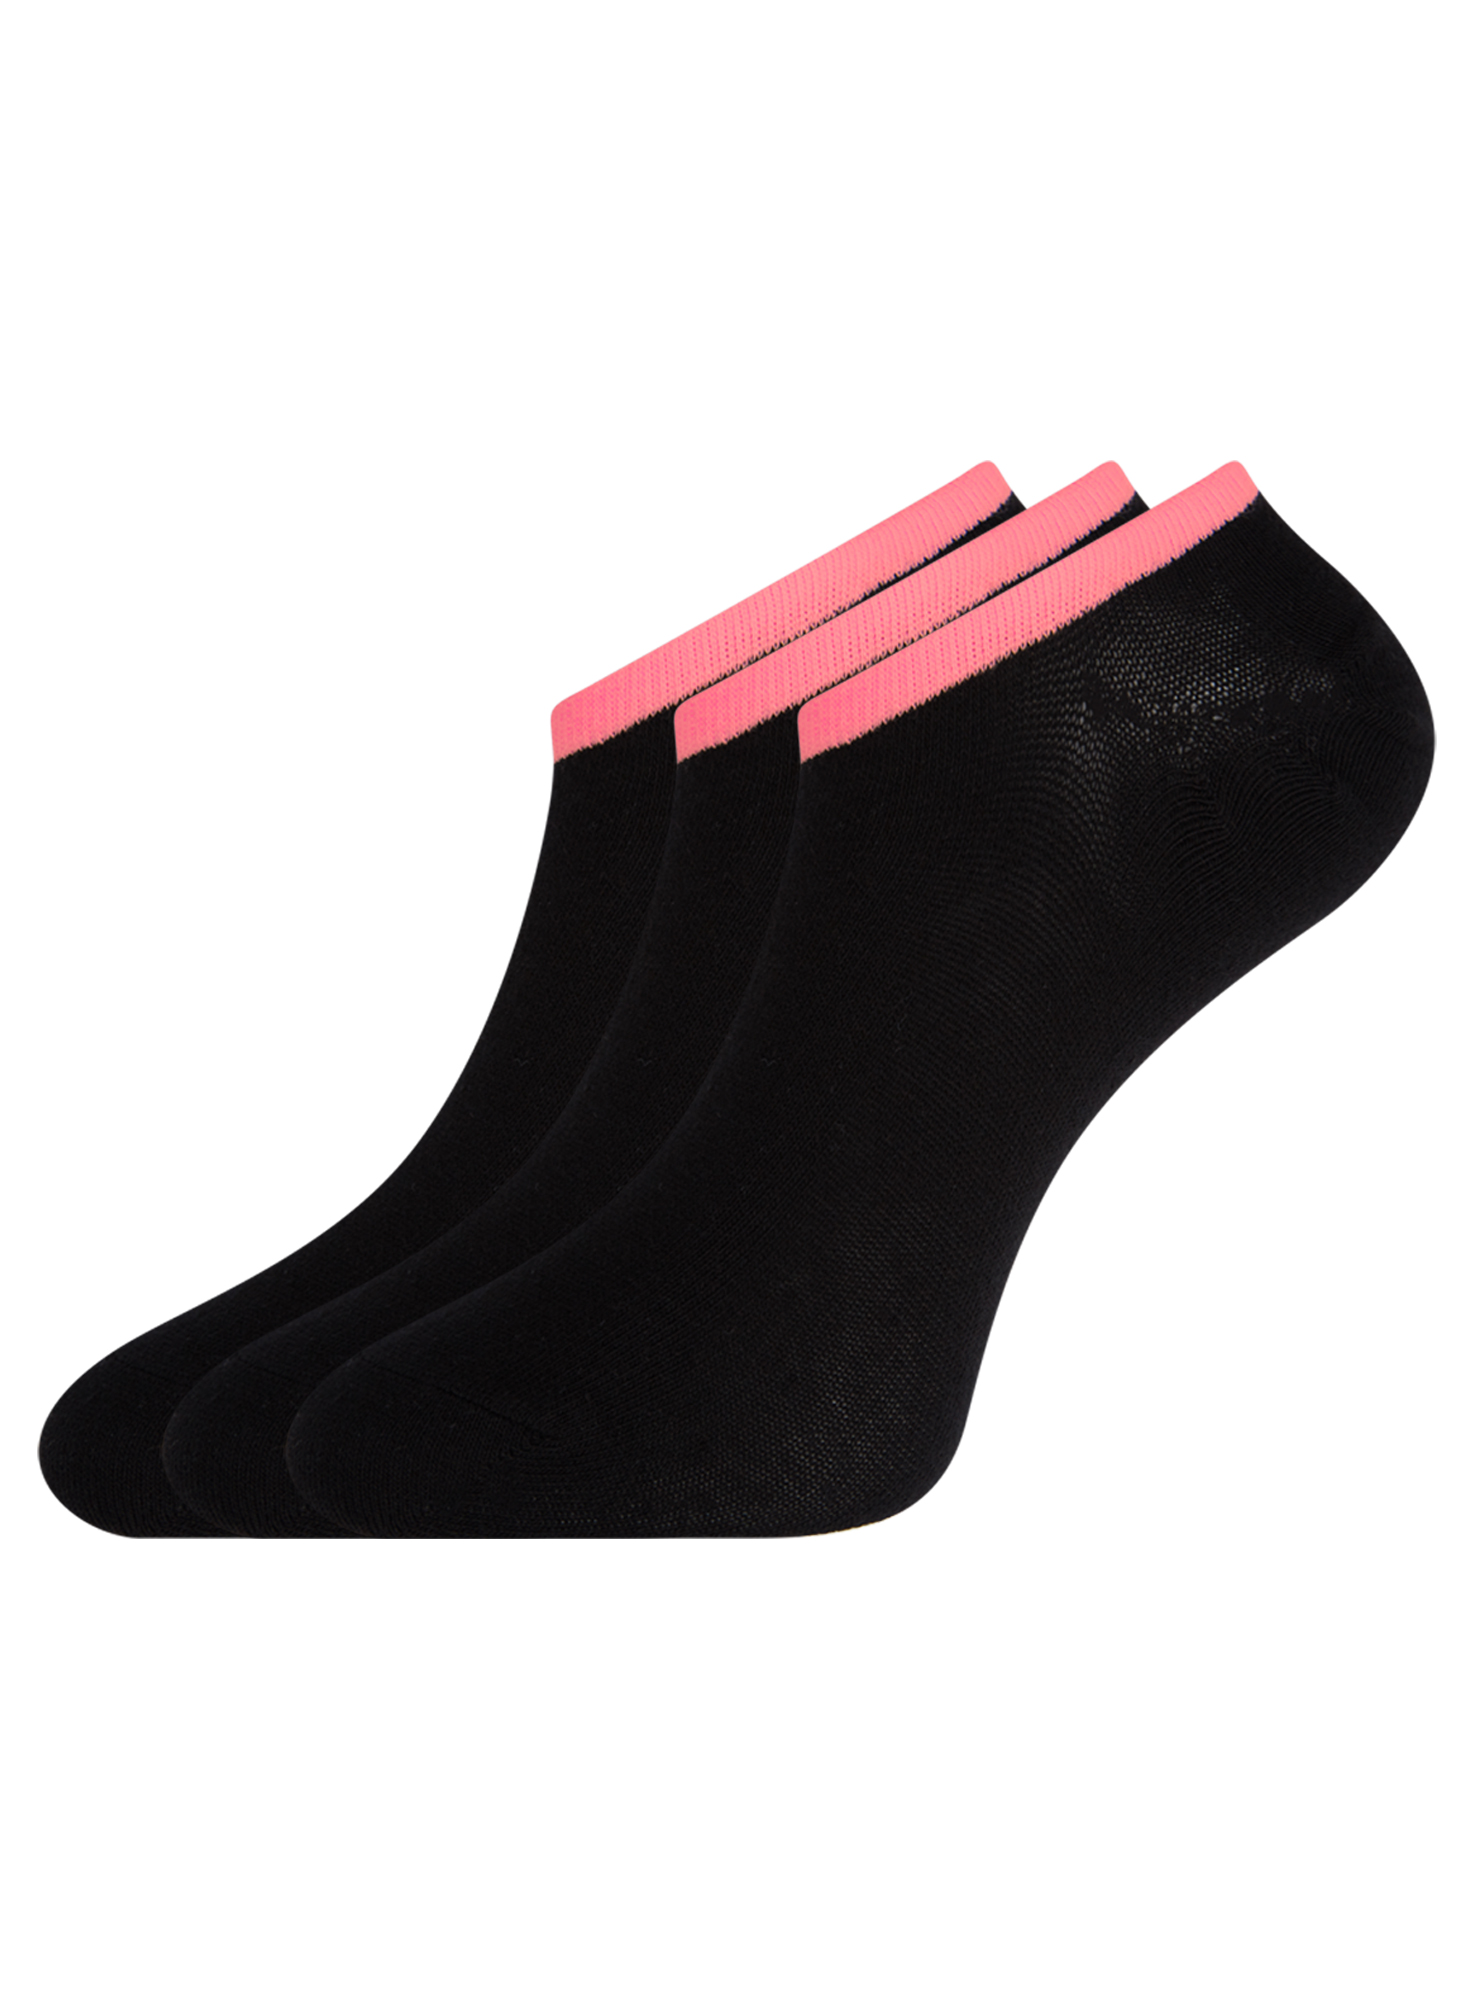 Комплект носков женских oodji 57102602T3 черных 35-37